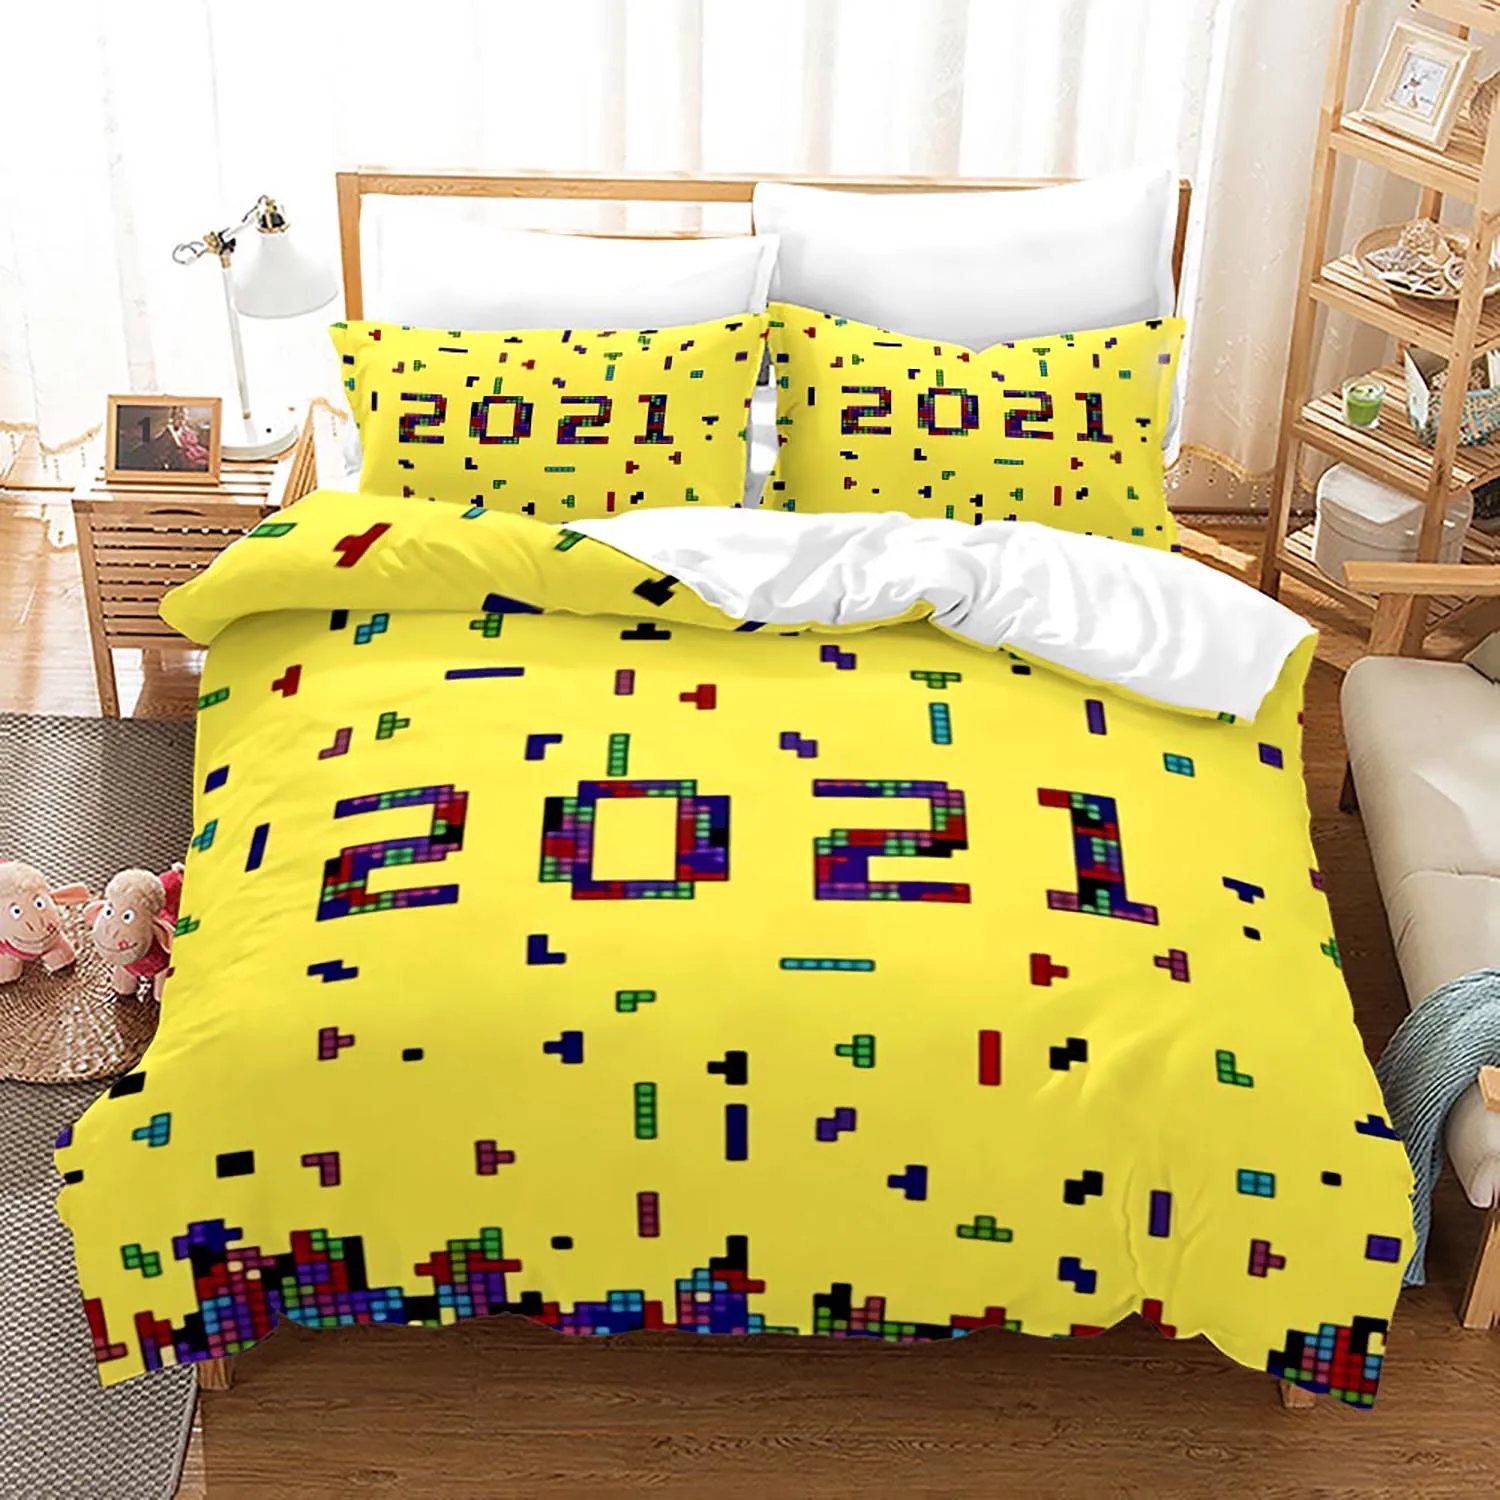 

Tetris Duvet Cover Set 3D Blocks Bed Cover Polyester Comforter Cover Pillowcases Nostalgic Game Bedding Set Queen King Full Size